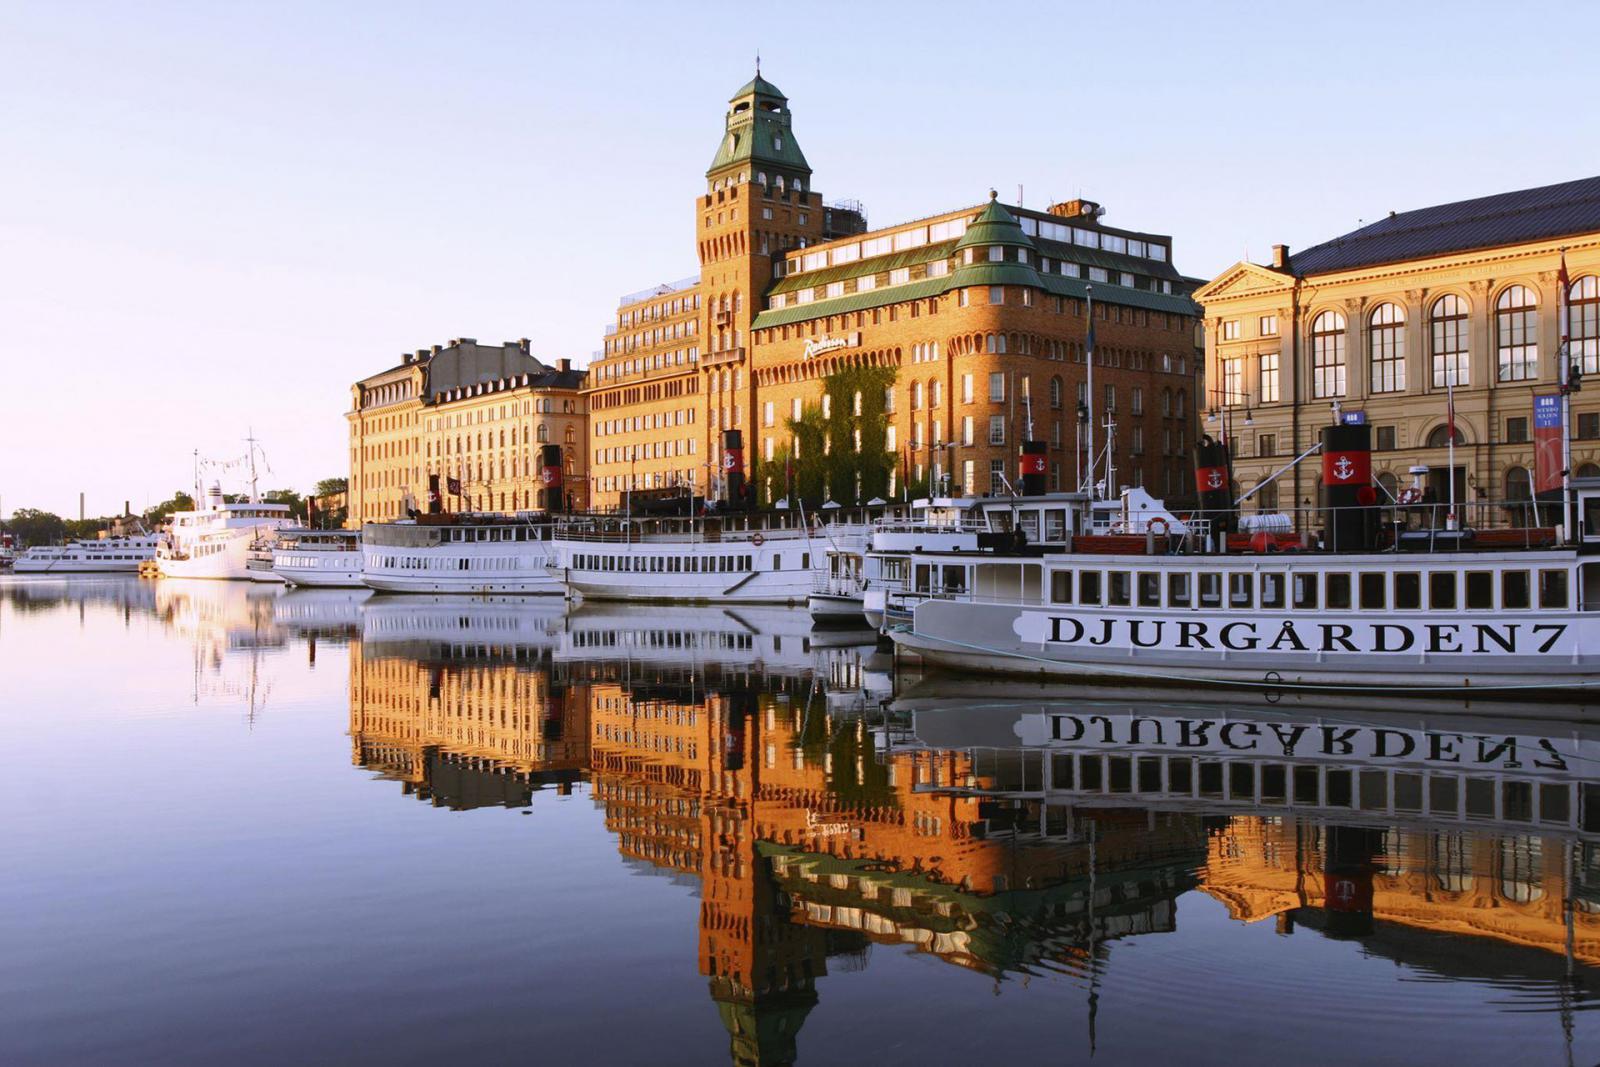 Архитекторы Wingårdhs обновили отель Radisson в Стокгольме